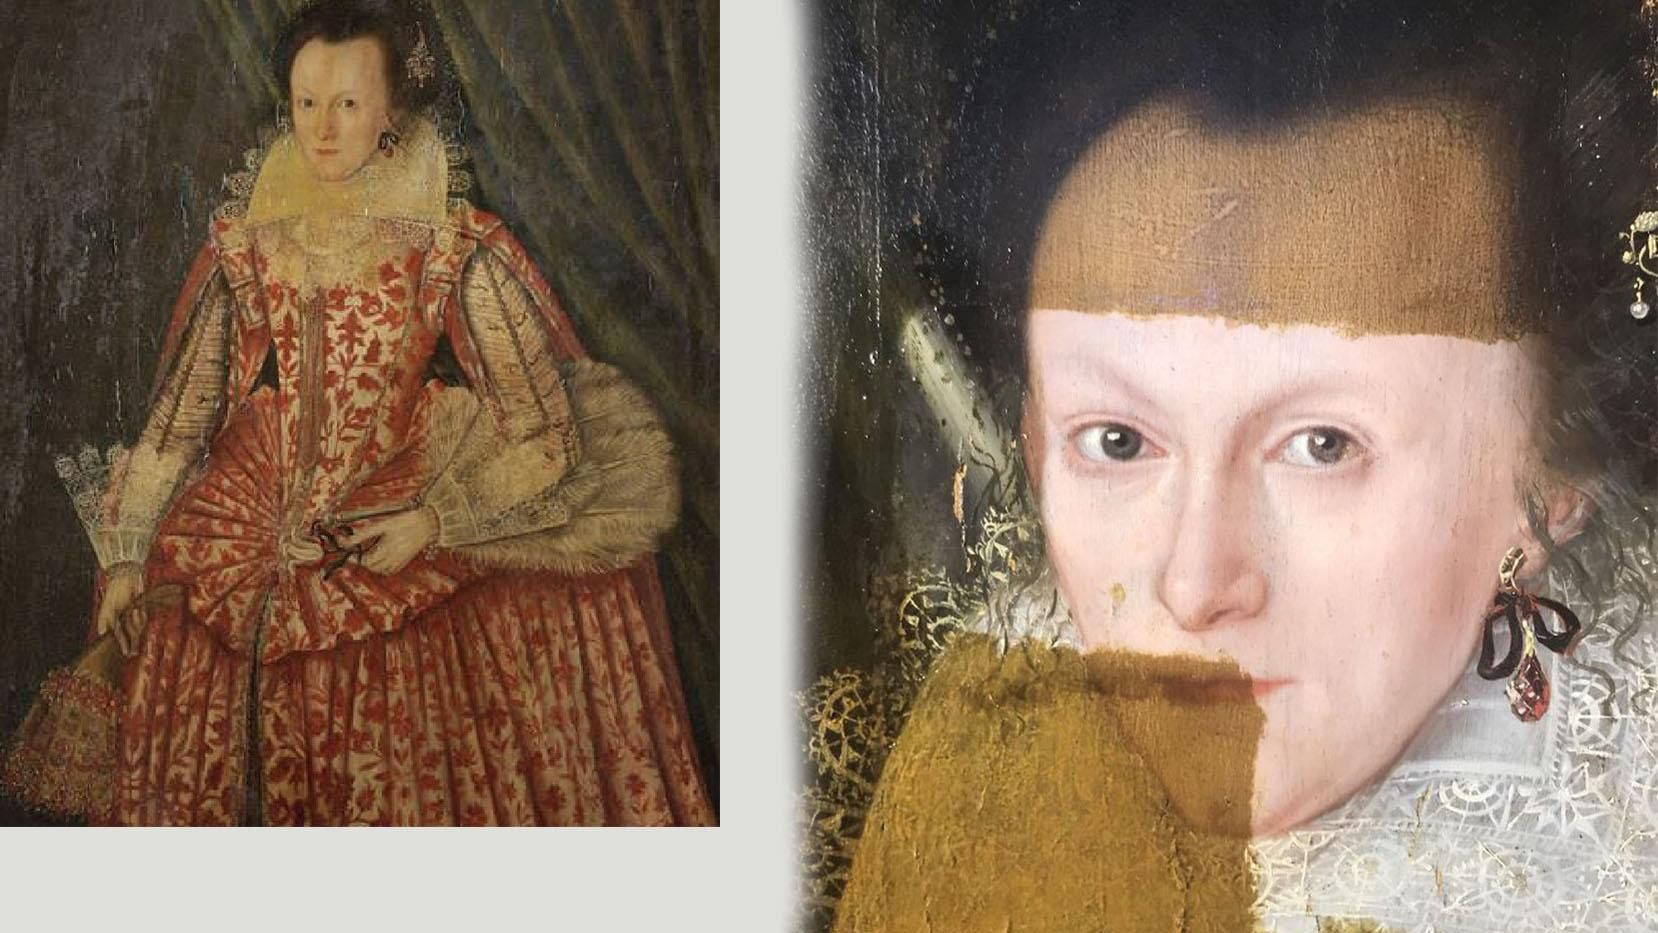 Как выглядит 400-летняя картина после чистки: впечатляющие фото "до" и "после"